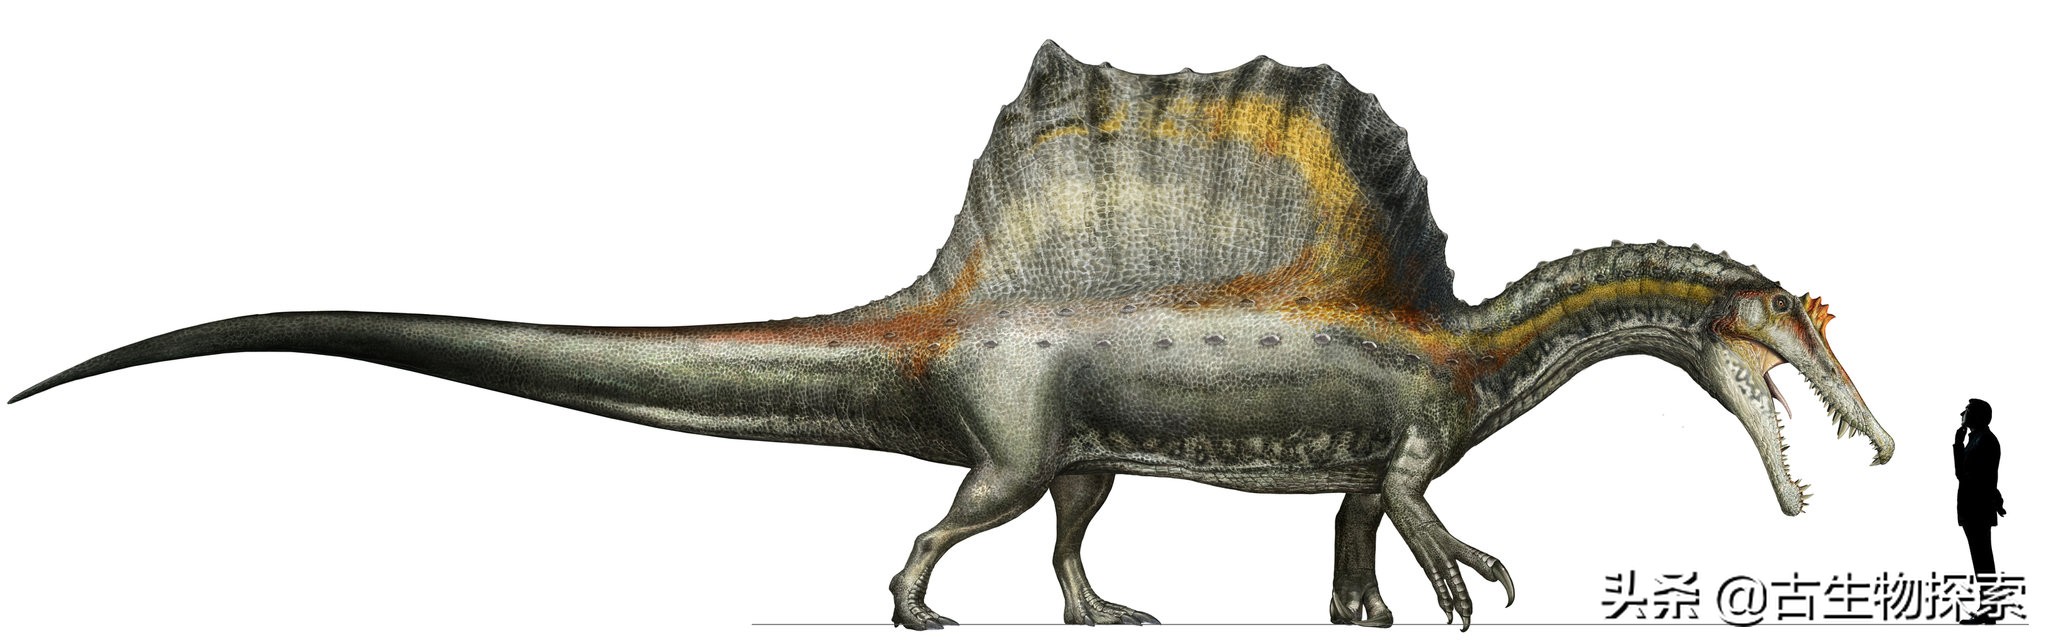 吉龙恐龙百科图片